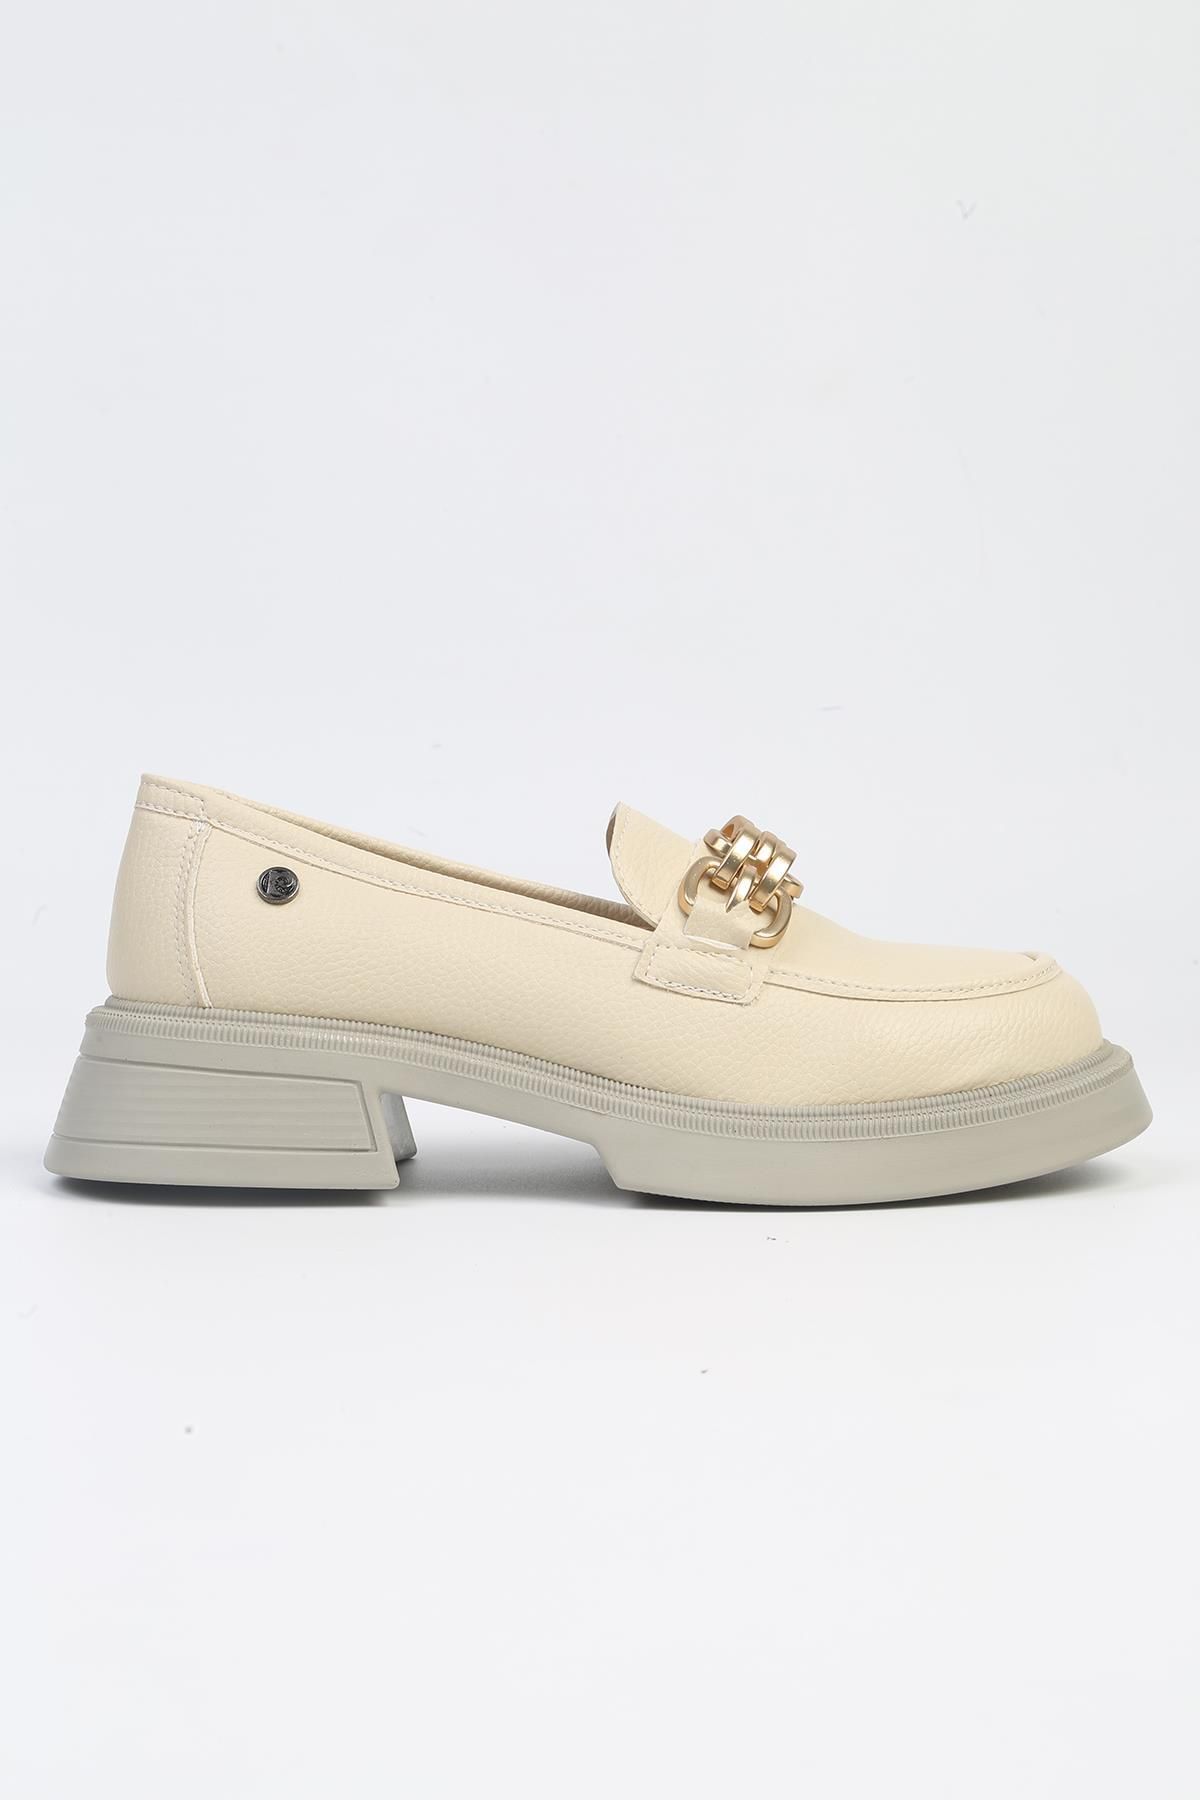 Pierre Cardin ® | PC-52651 - 3441 Krem -Kadın Loafer Günlük Ayakkabı